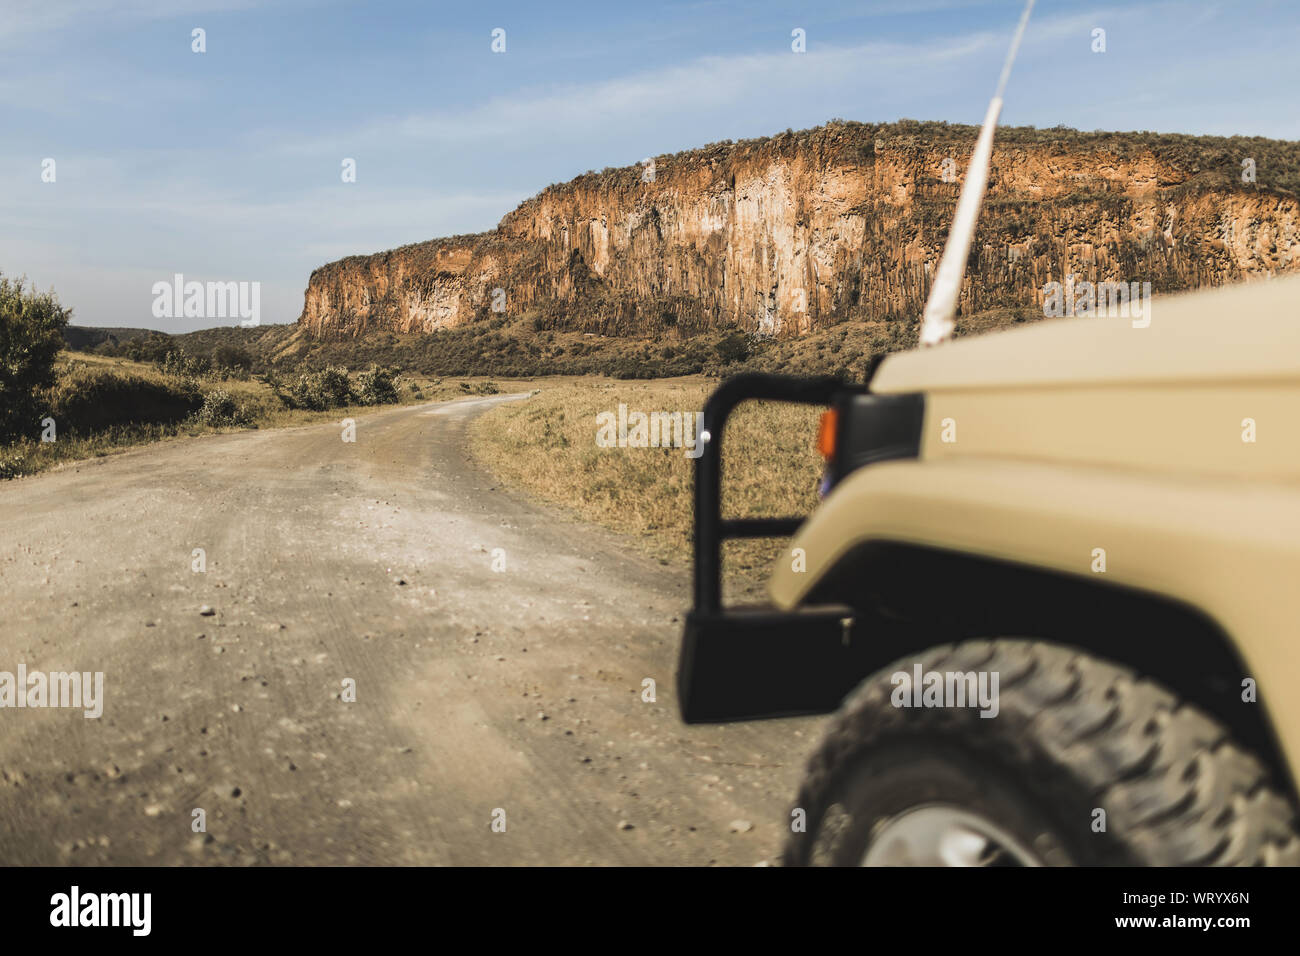 Safari dans le parc national de Hell's Gate, au Kenya. Voiture jeep hors route, de savane et sur la montagne. Explorer la nature sauvage de l'Afrique. Banque D'Images